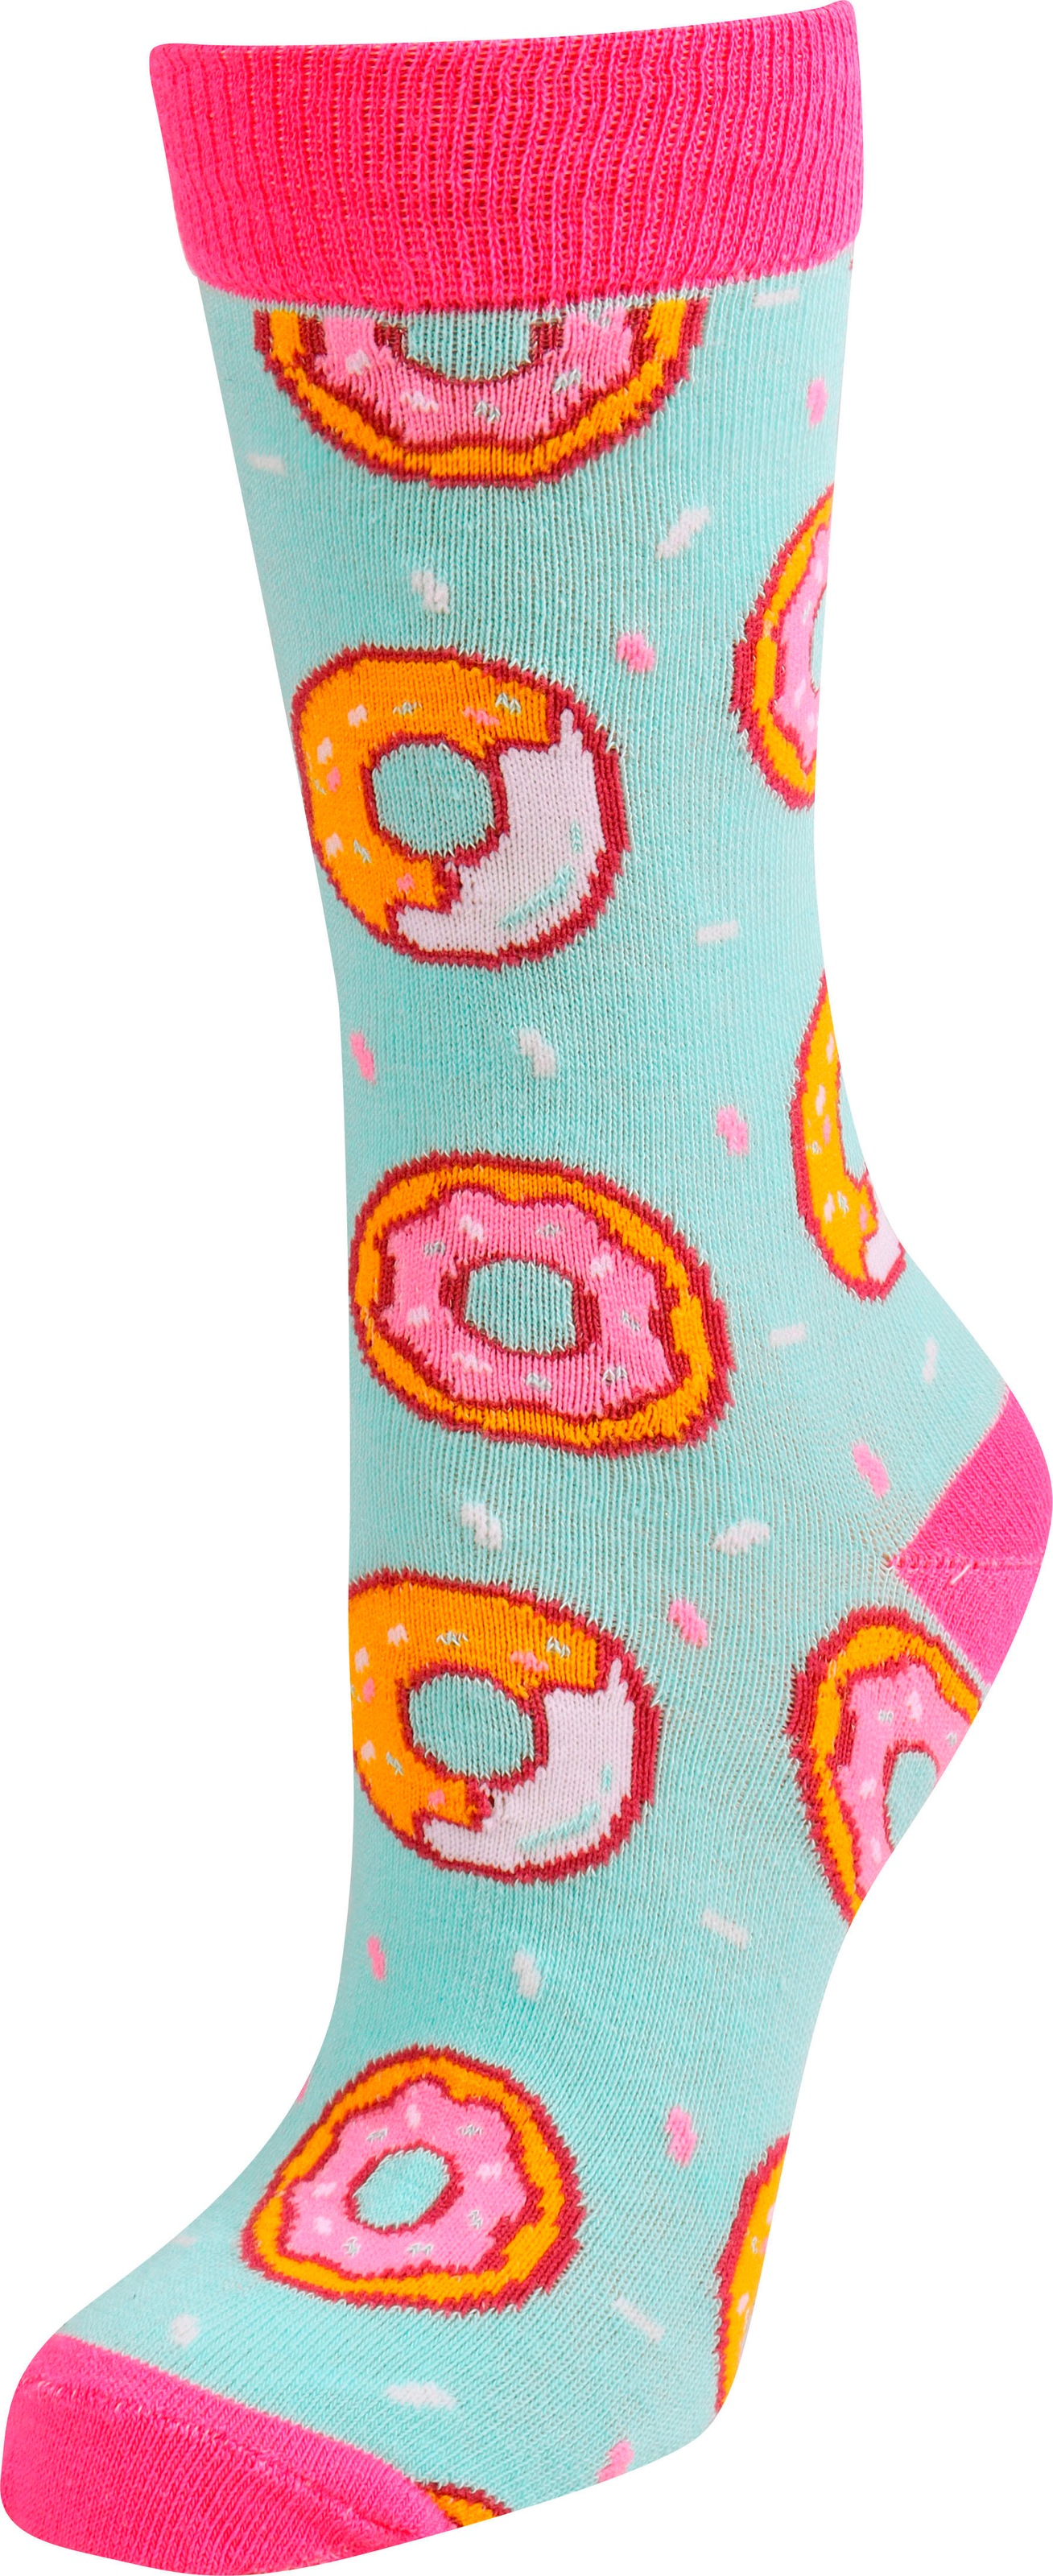 Capelli New OTTO online York Socken bestellen bei